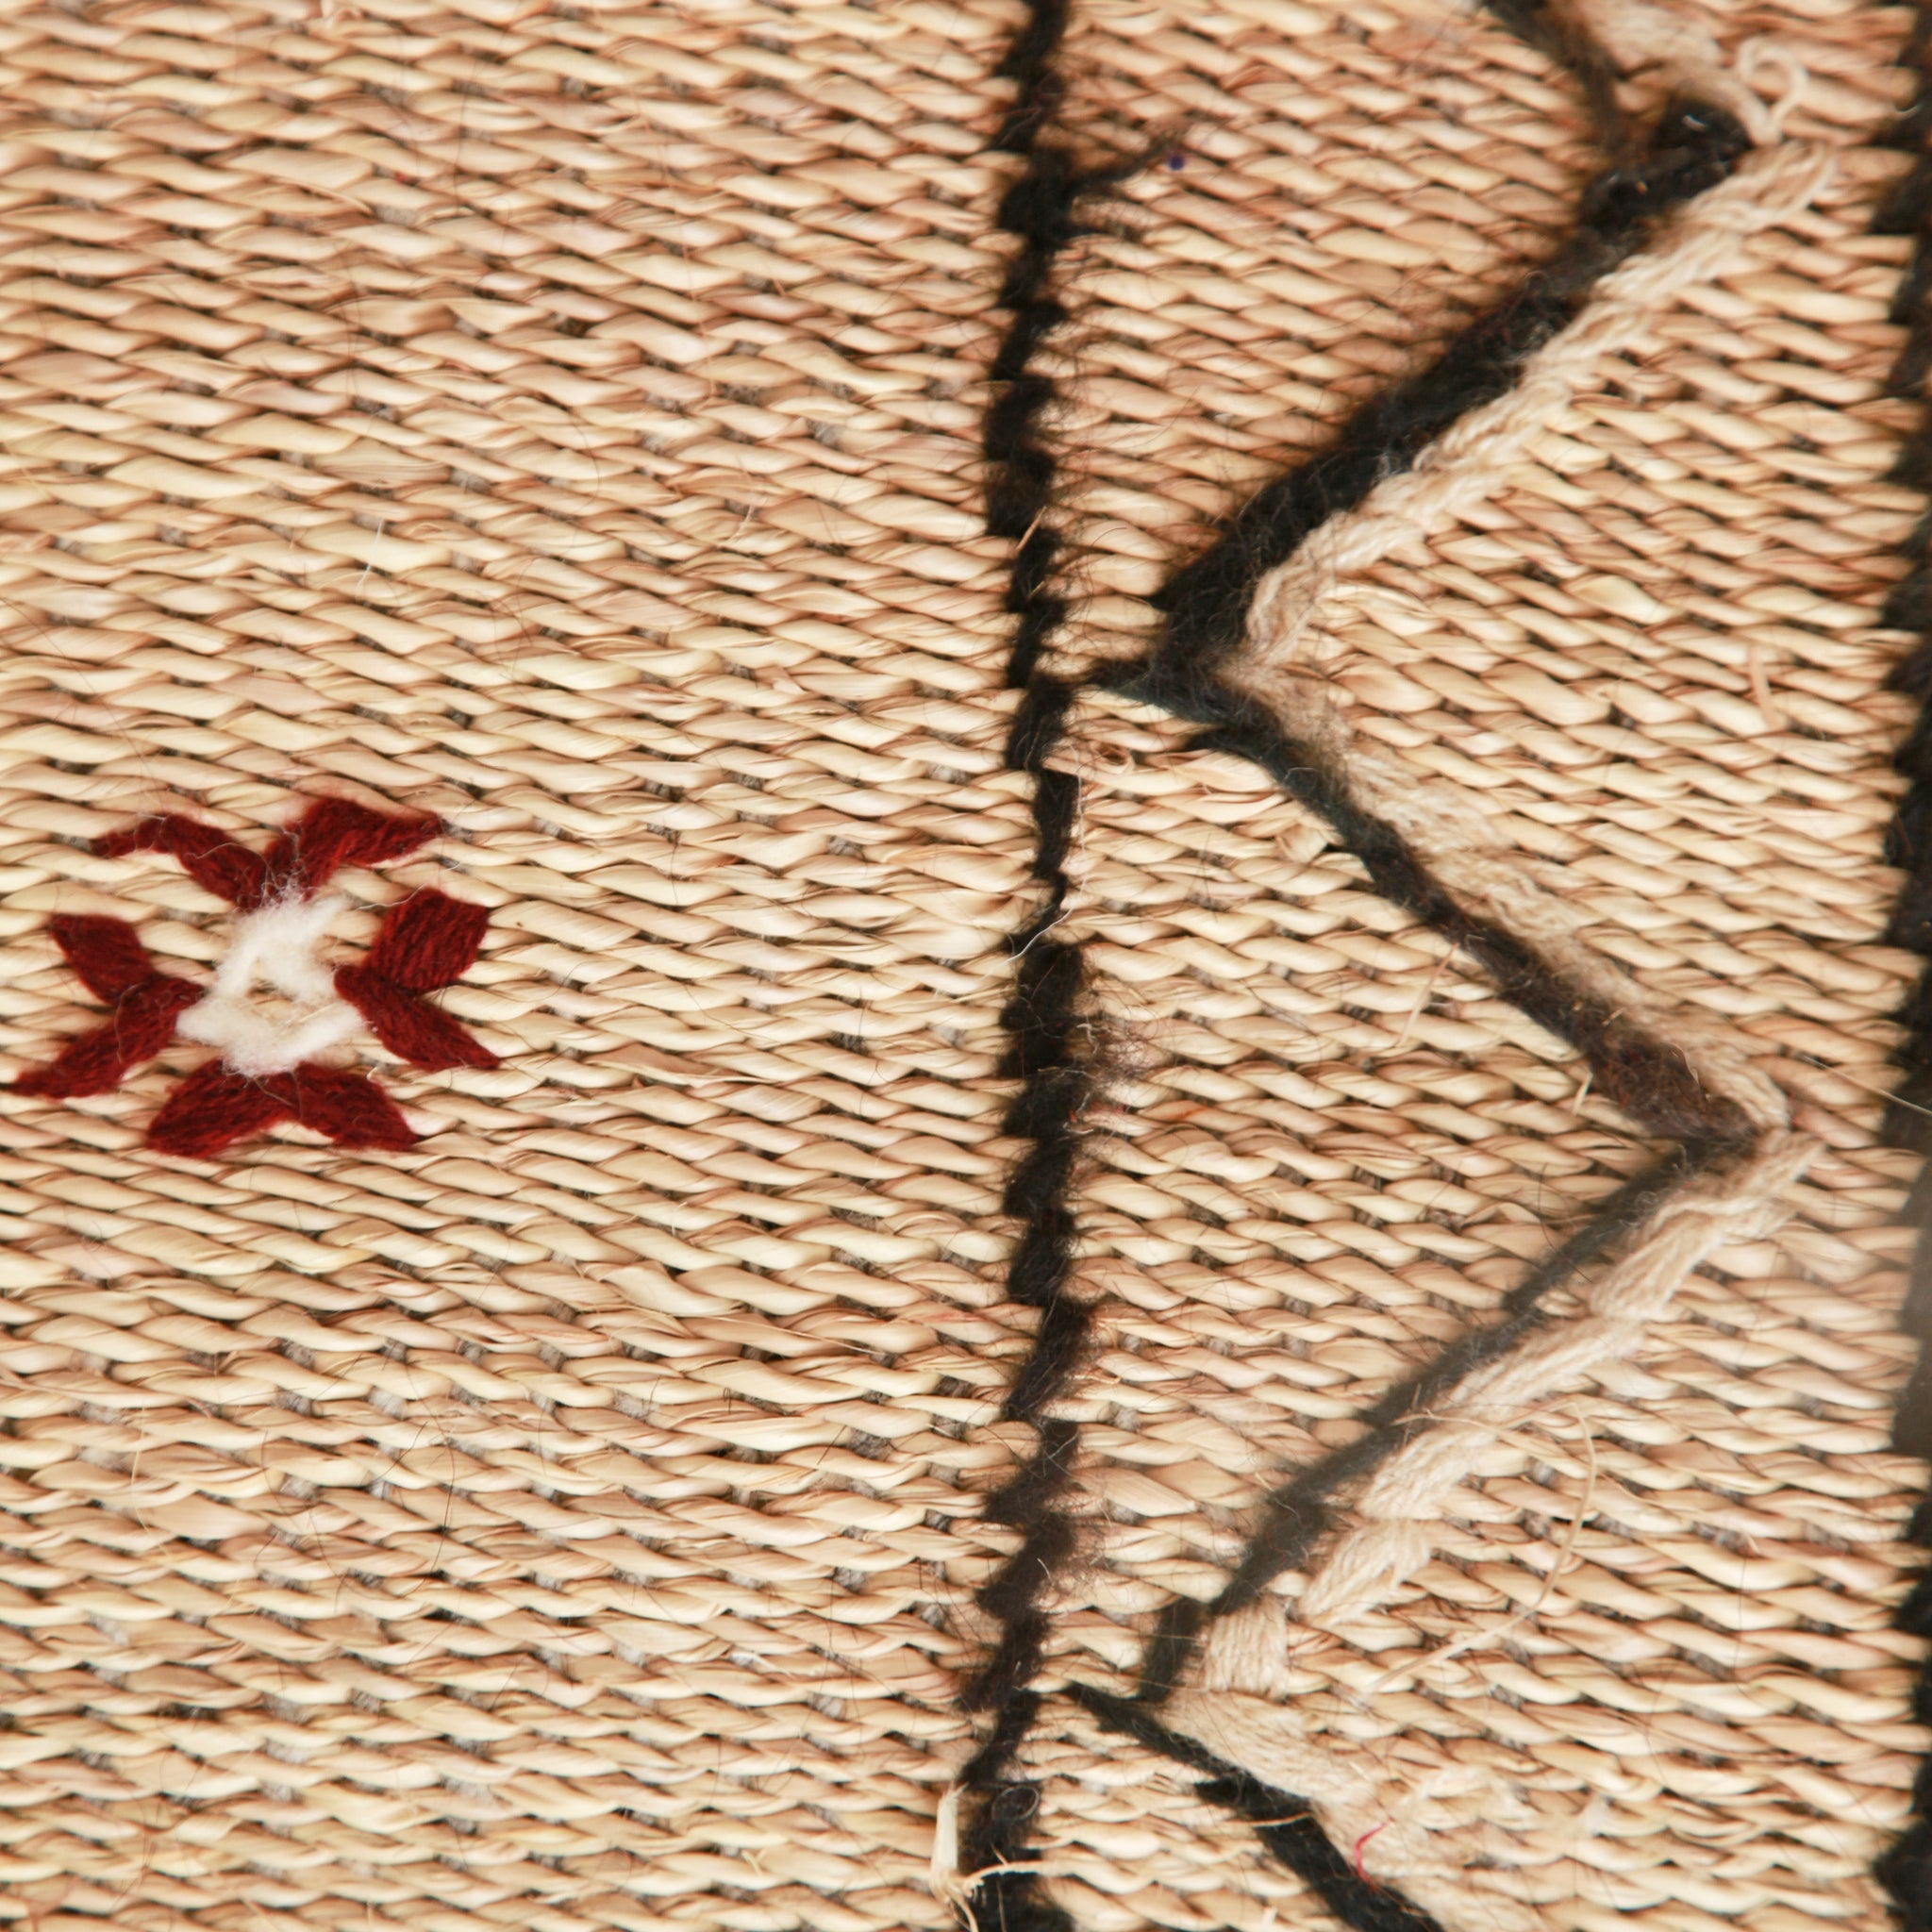 dettaglio del ricamo di una stuoia hassira in paglia di piccole dimensioni con lana ricamata nera e qualche simbolo rosso